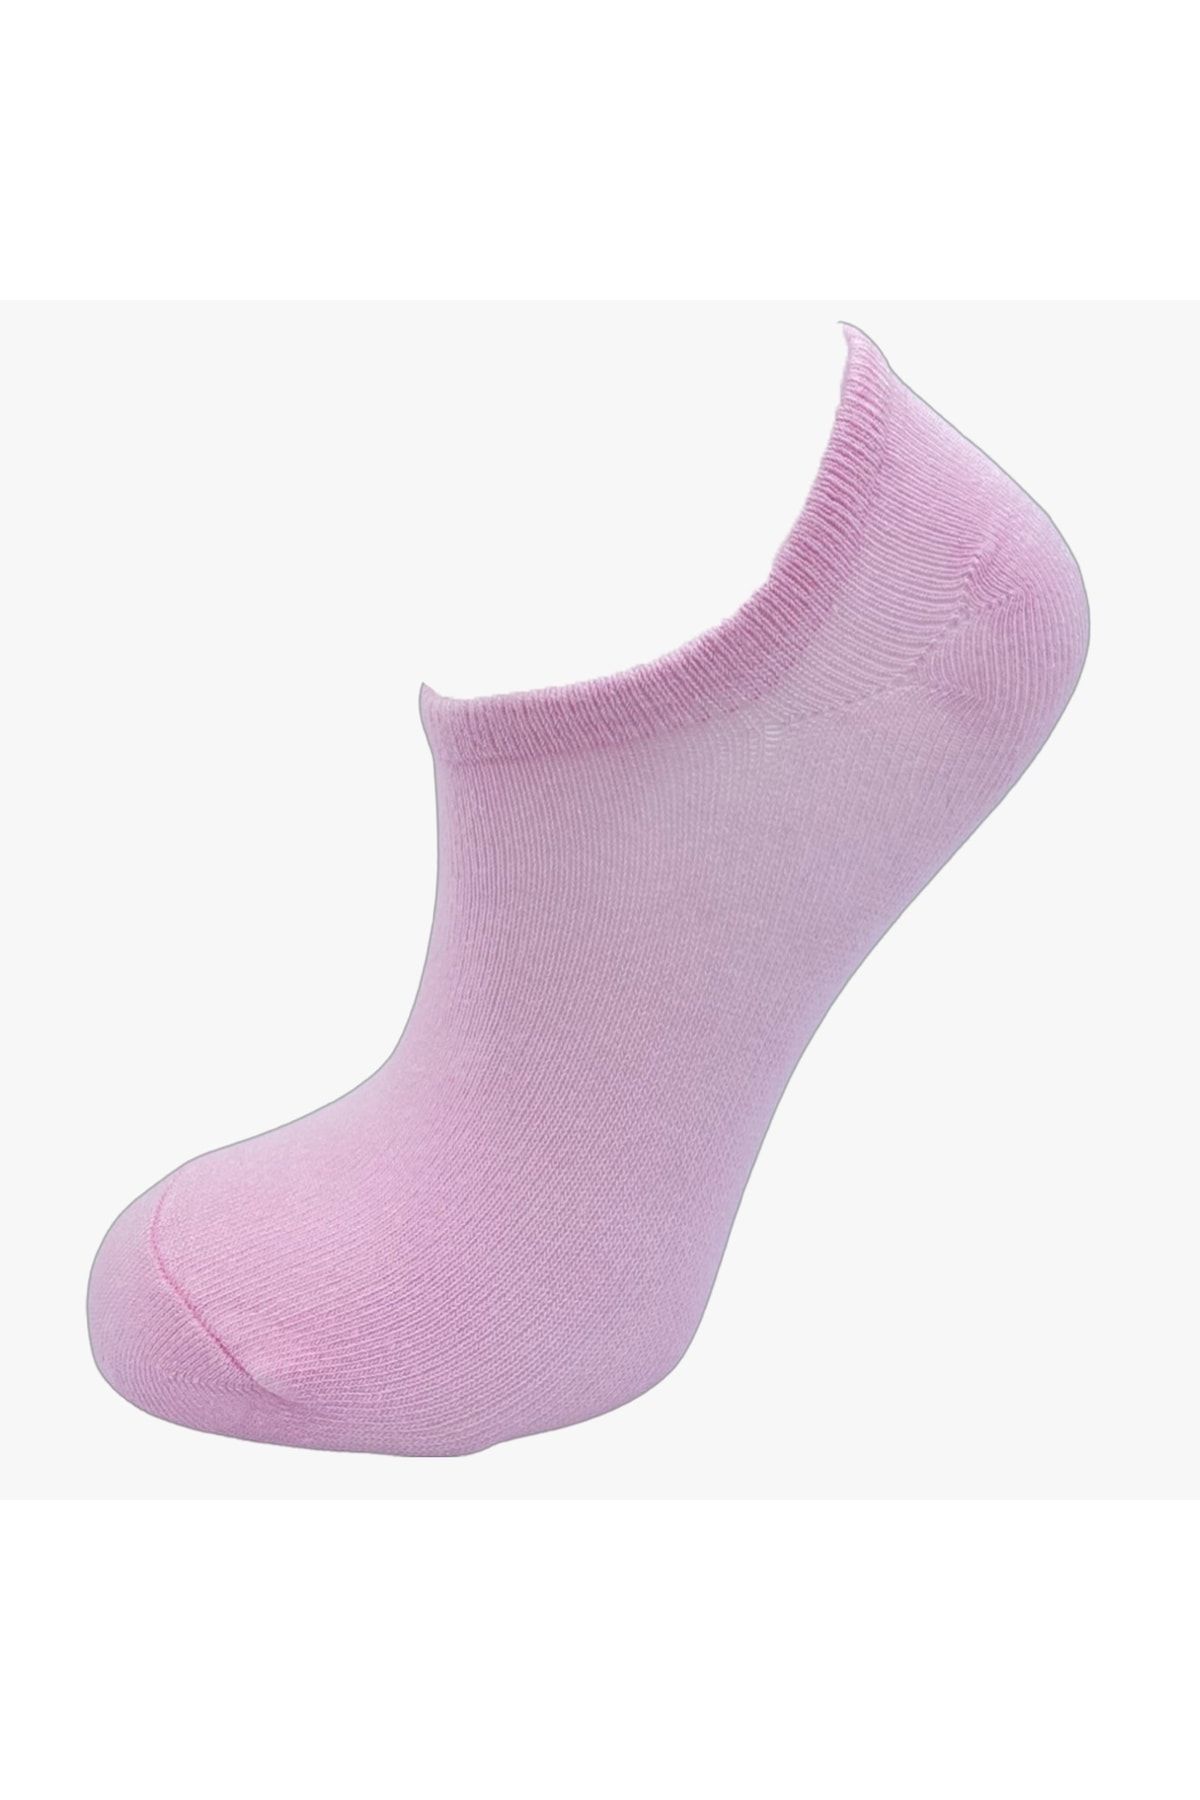 pazariz Kadın Pembe Patik Çorap 10 Adet